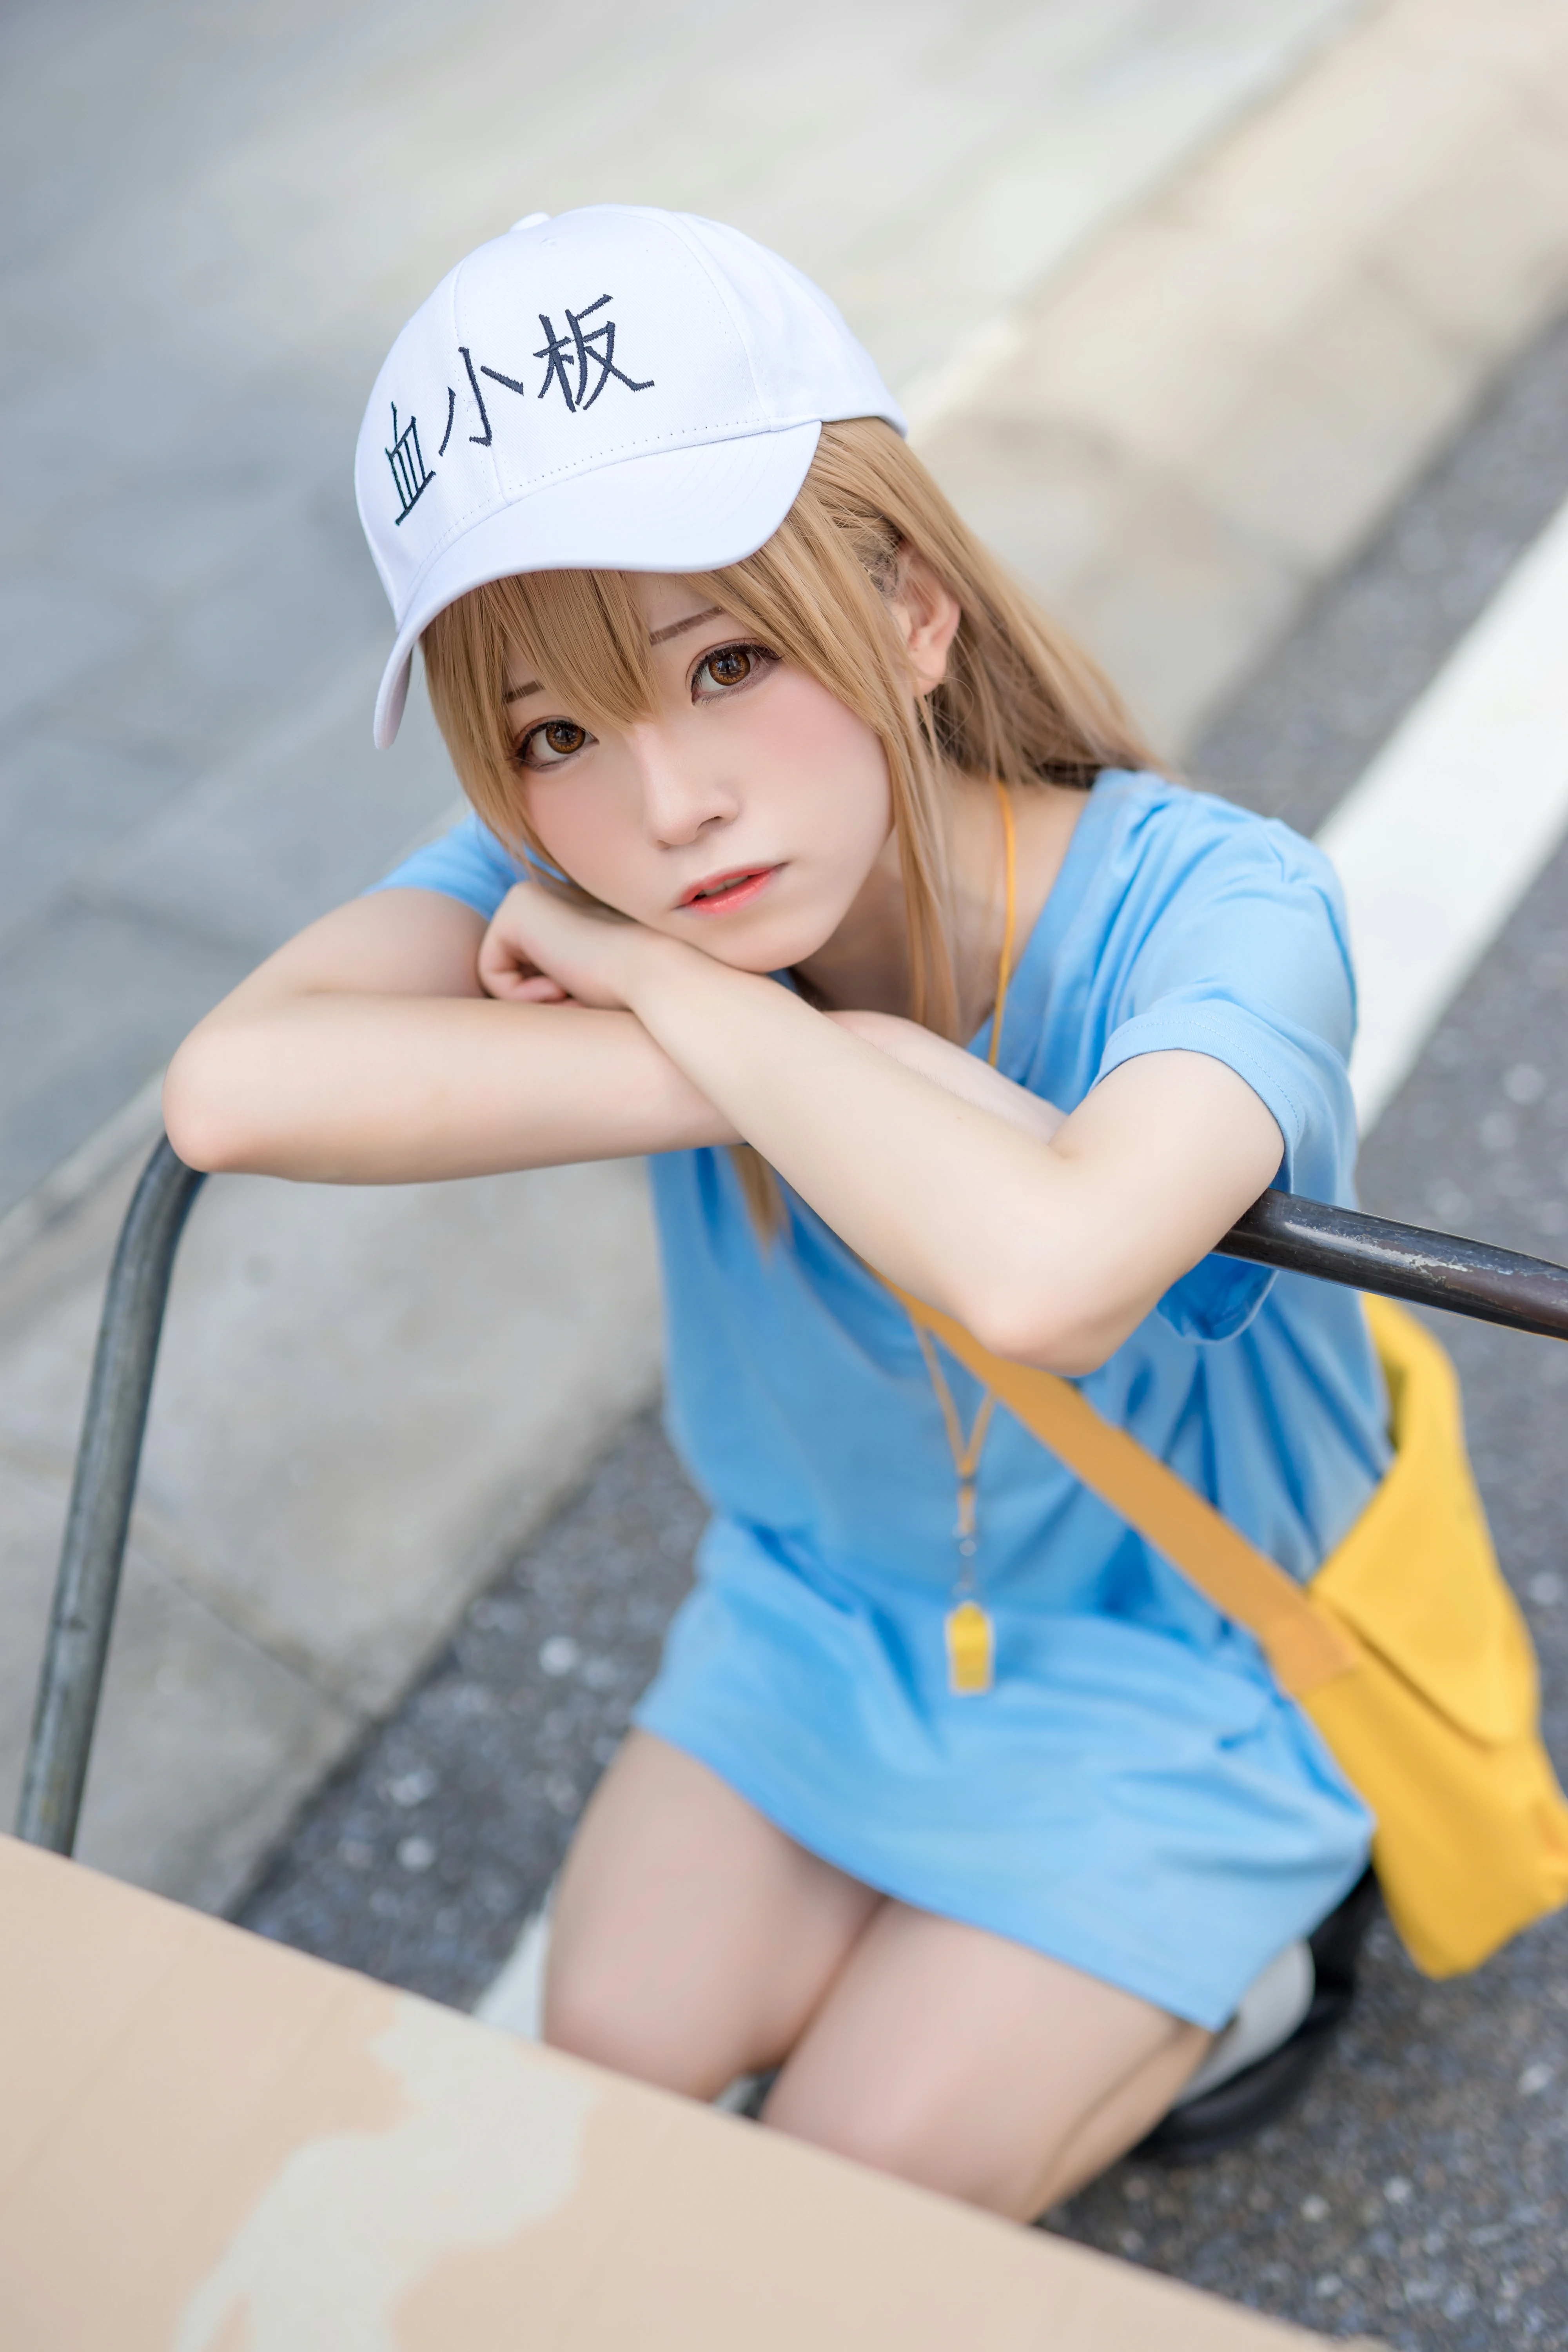 清纯少女快递员 绮太郎Kitaro 血小板 蓝色连身短袖街拍写真,1192